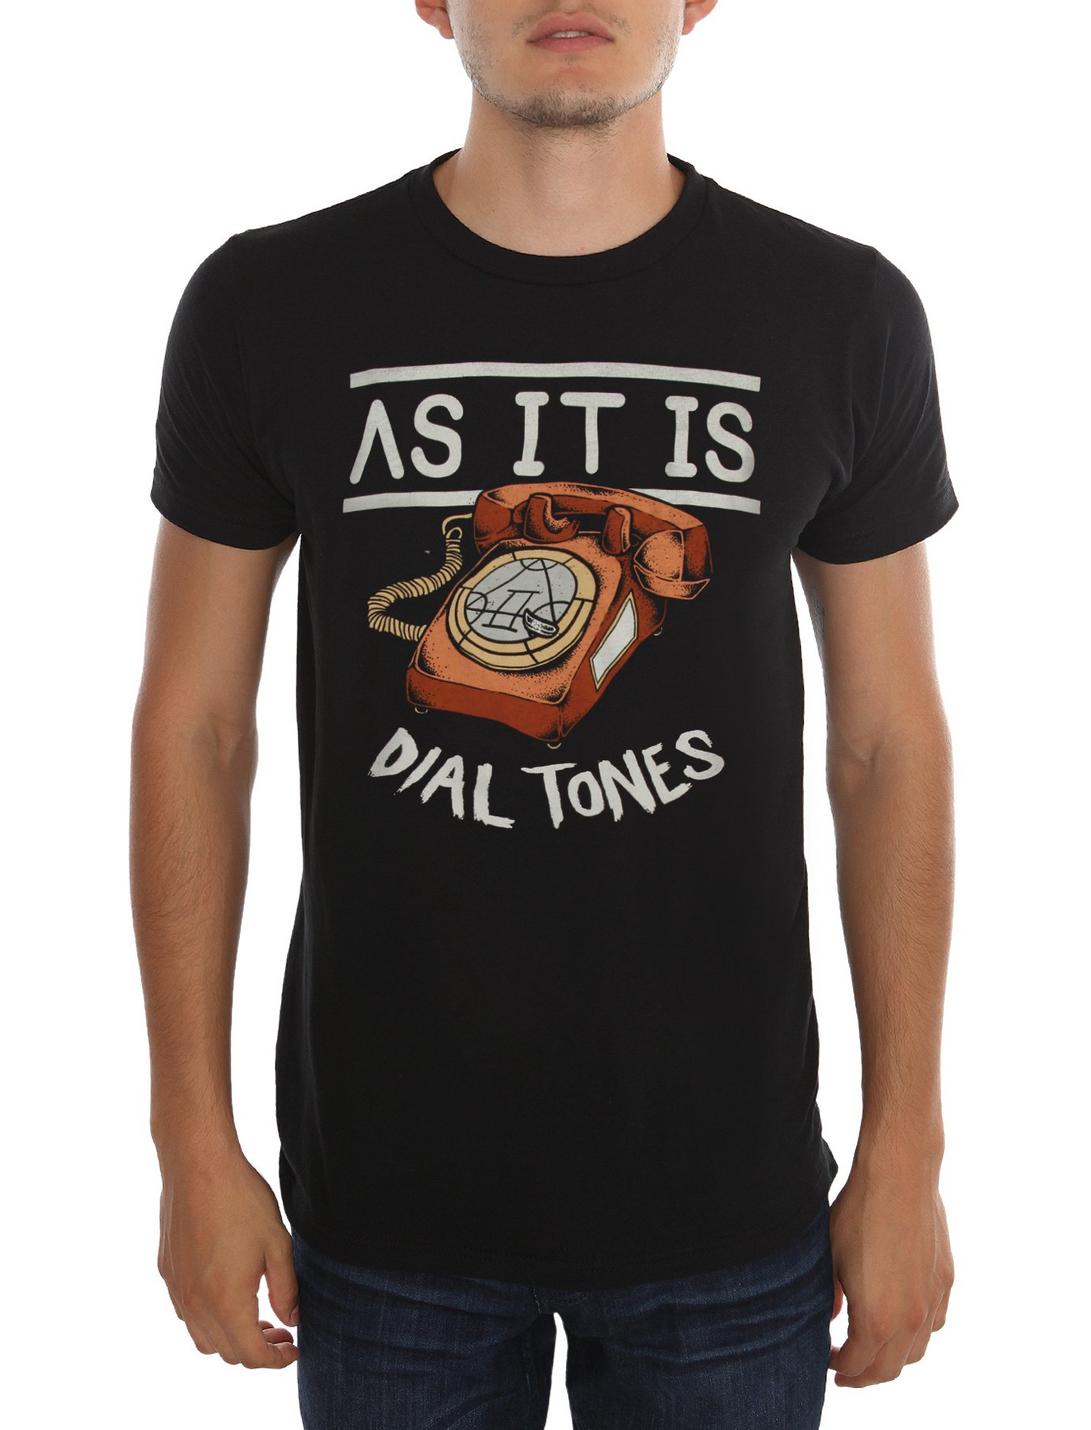 As It Is Dial Tones T-Shirt, BLACK, hi-res